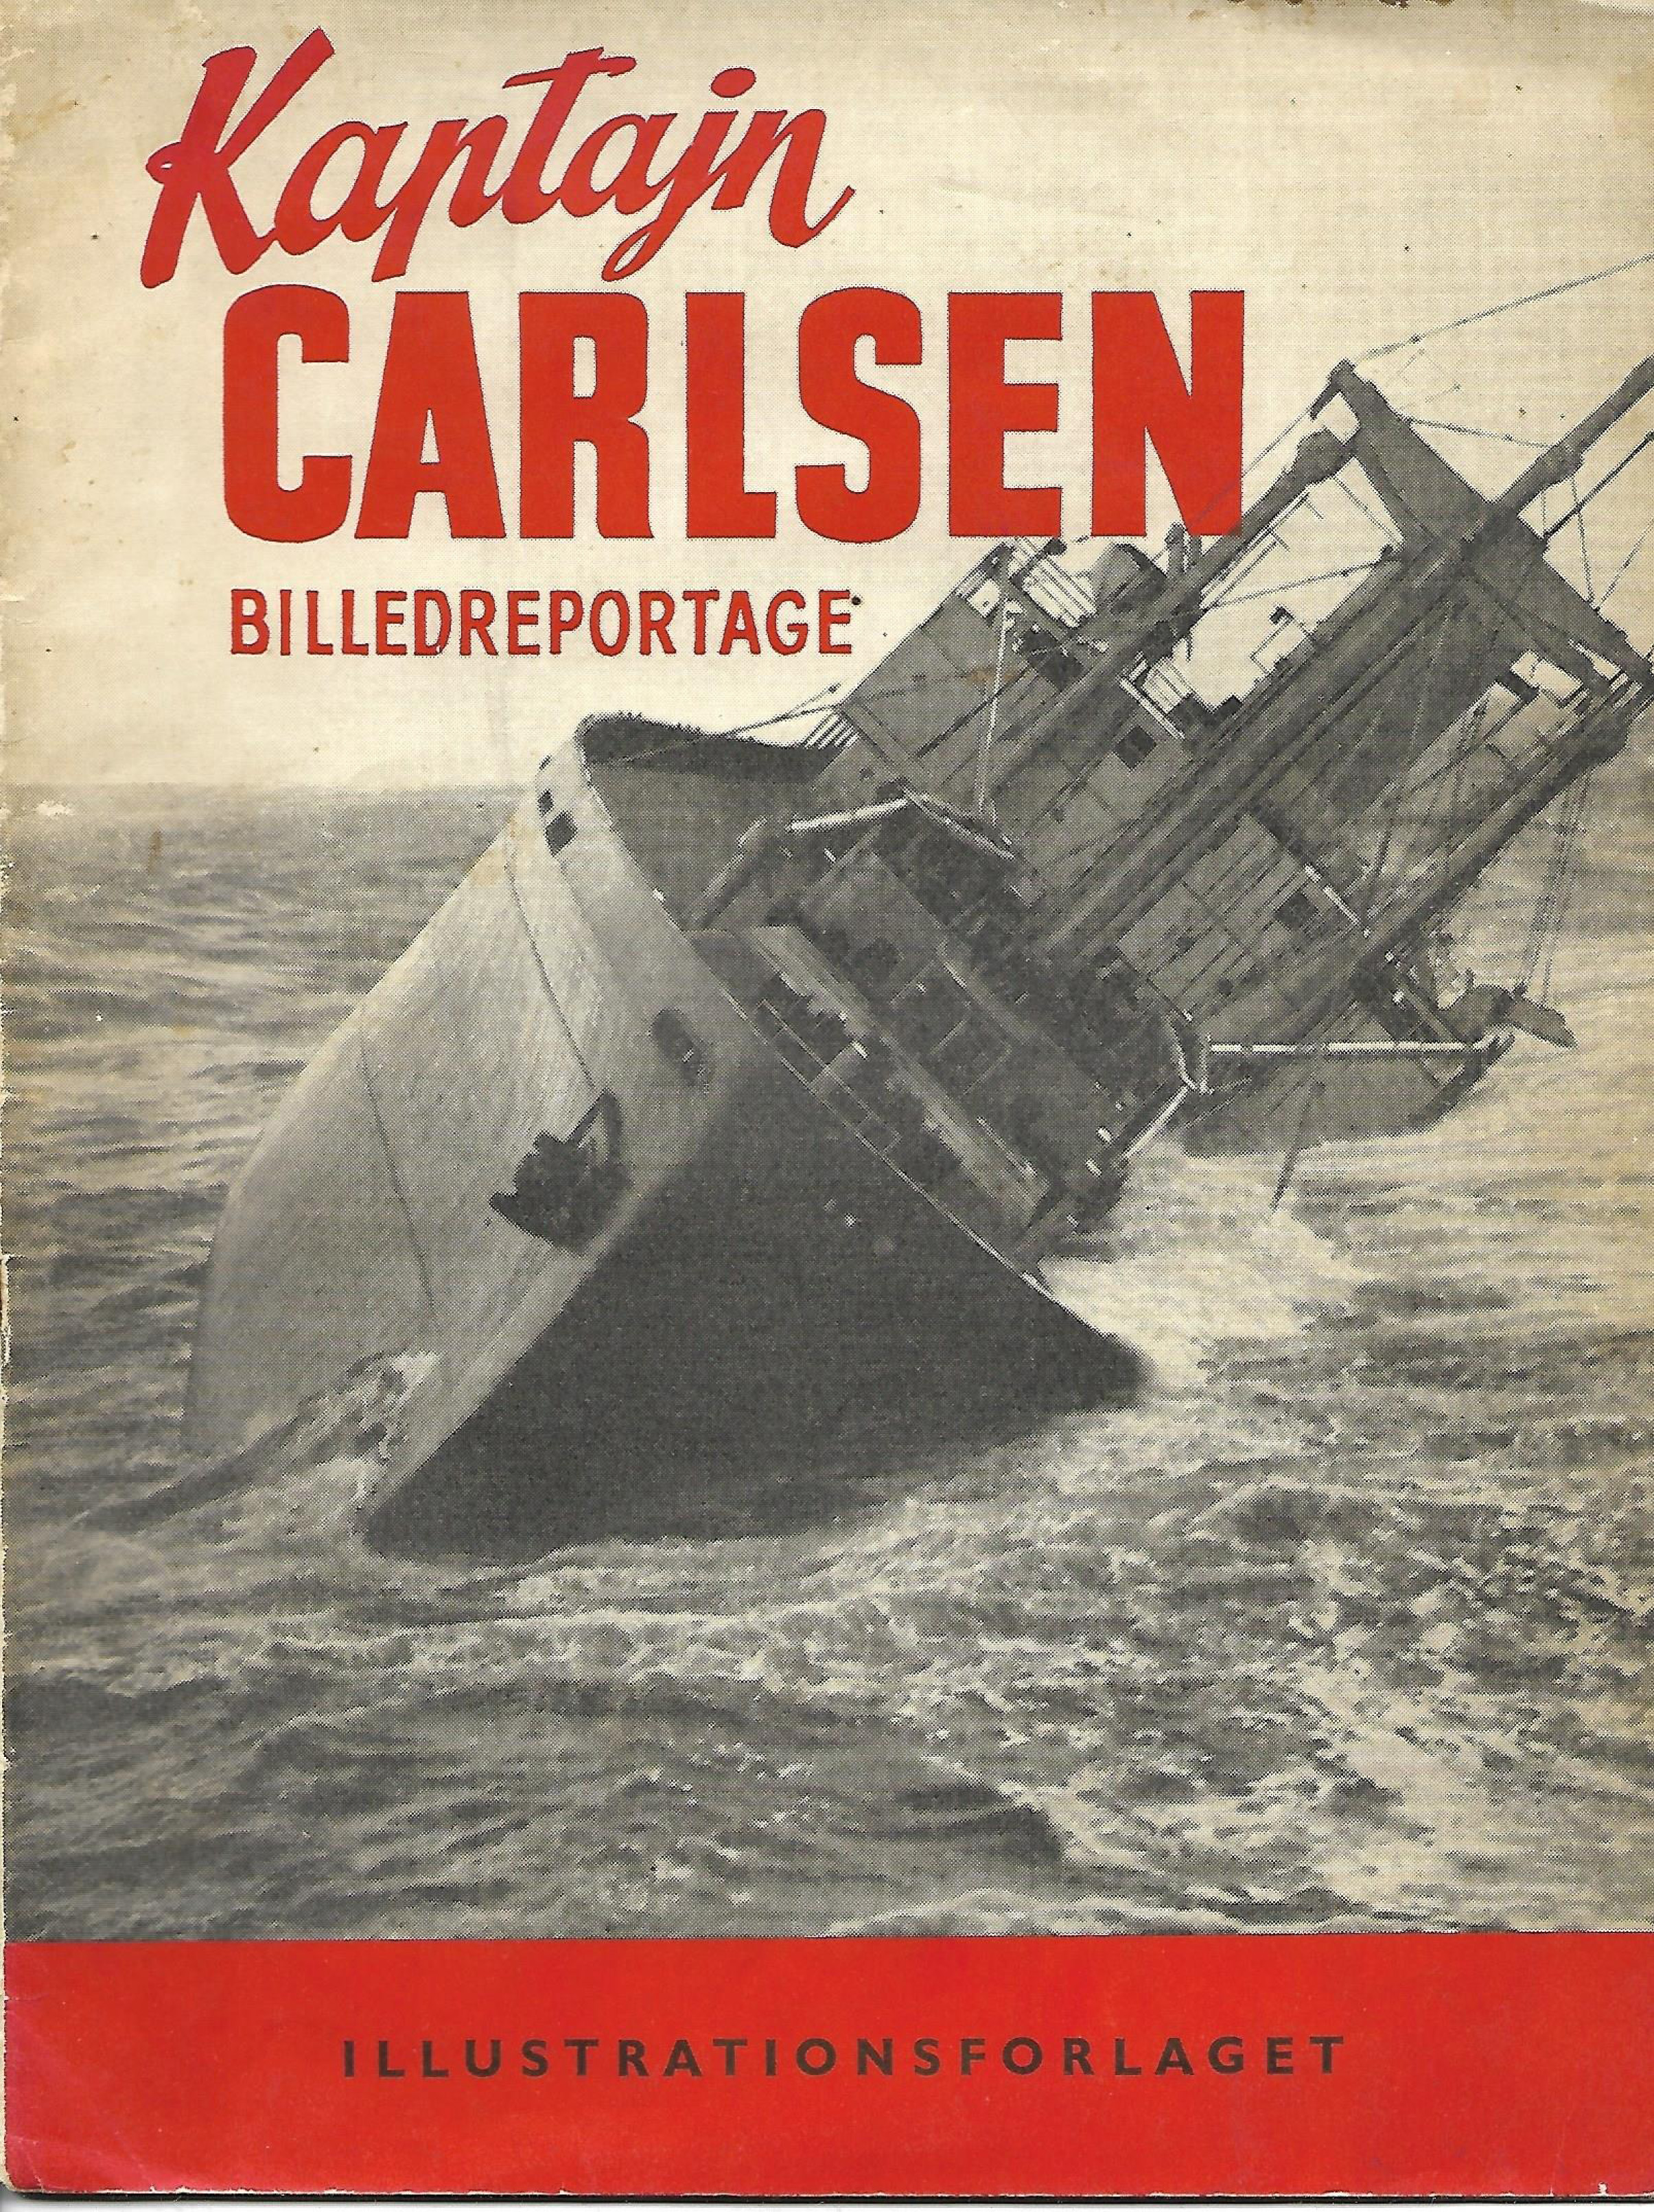 Kaptajn Carlsen 1952 - Flying Enterprise - Billedreportage-1